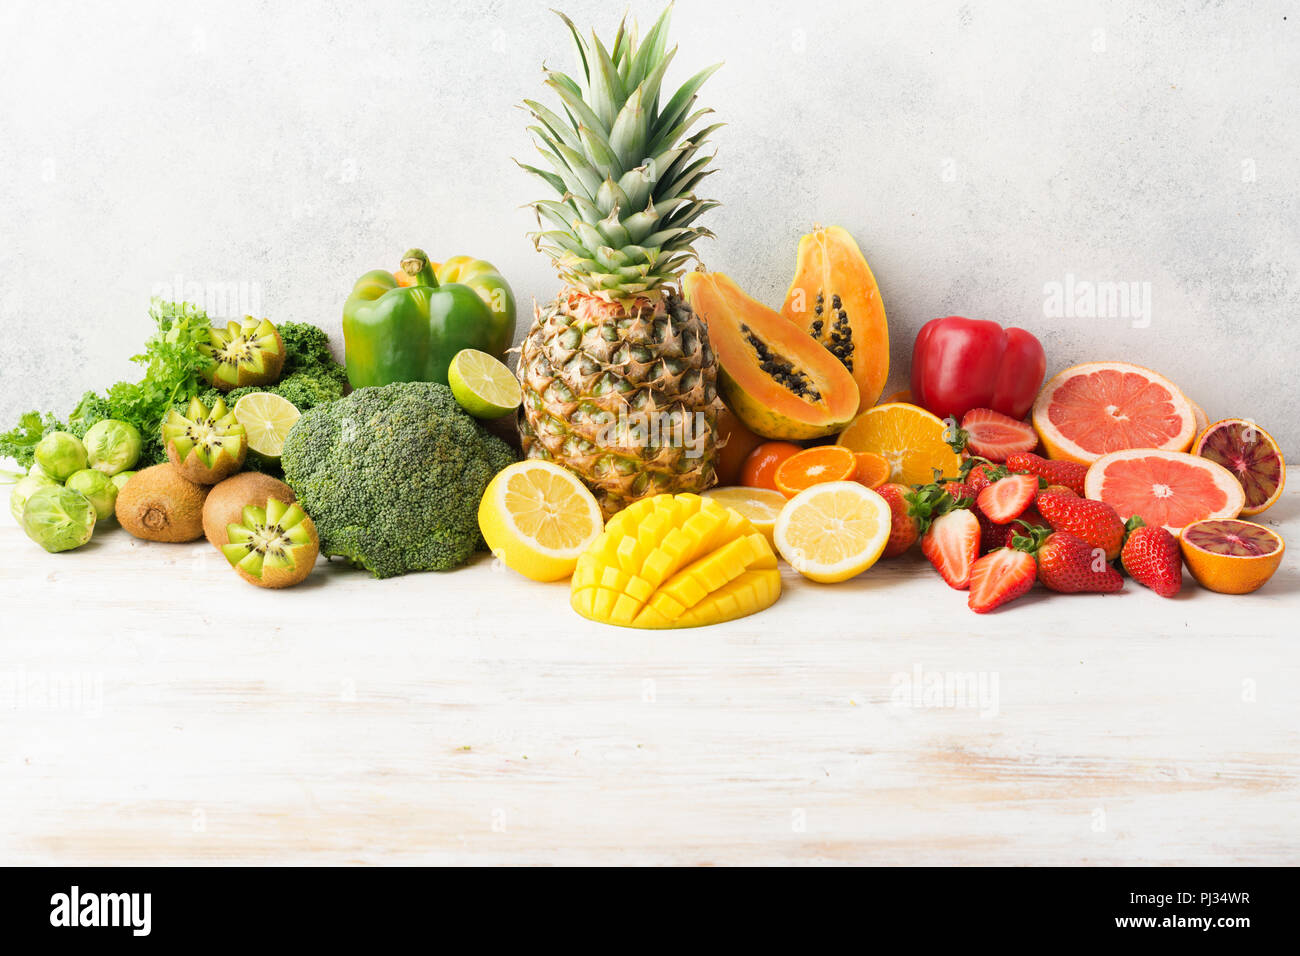 La vitamine C, fruits et légumes en couleurs arc-en-ciel, l'orange pamplemousse kiwi mangue ananas papaye citron poivre chou brocoli, sur le tableau blanc, l'espace pour copier du texte, selective focus Banque D'Images